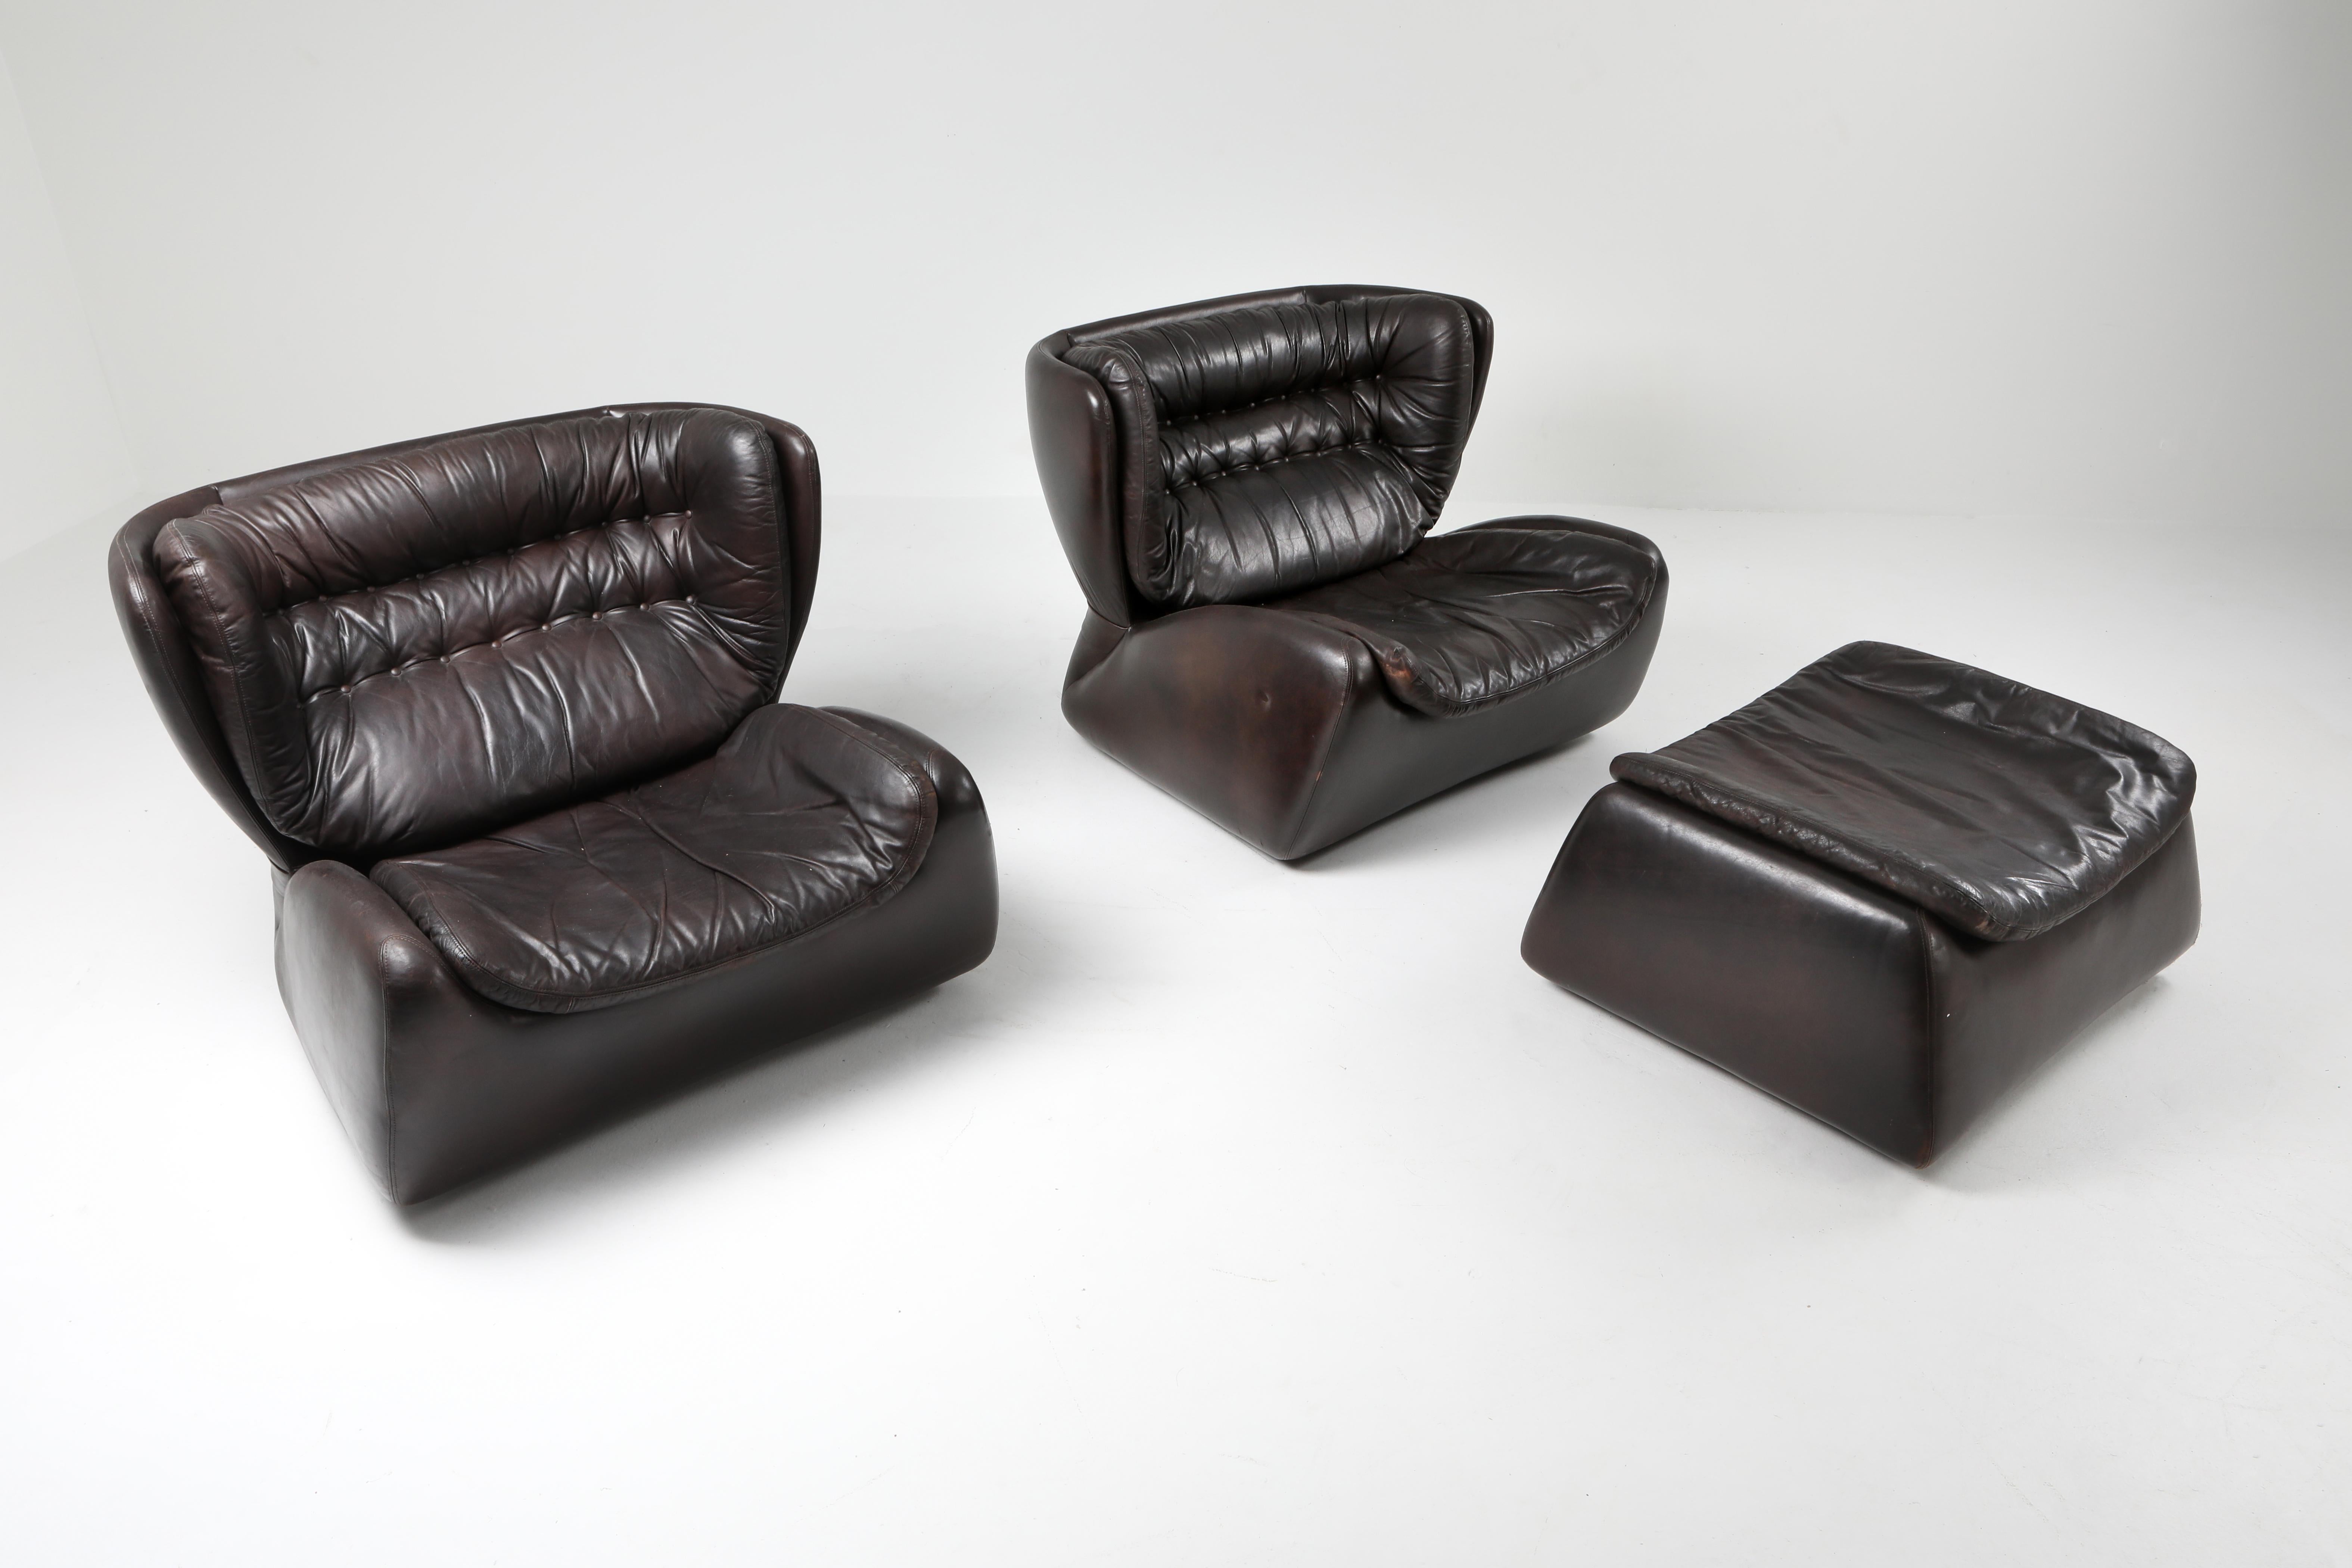 Chaise longue Heinz Waldmann & Anita Schmidt pour Durlet en 1970, cuir brun chocolat foncé, 

Durlet est une marque de meubles en cuir de luxe originaire de Belgique, un peu comme De Sede en Suisse.

Dans les années 1970, ils disposaient d'un